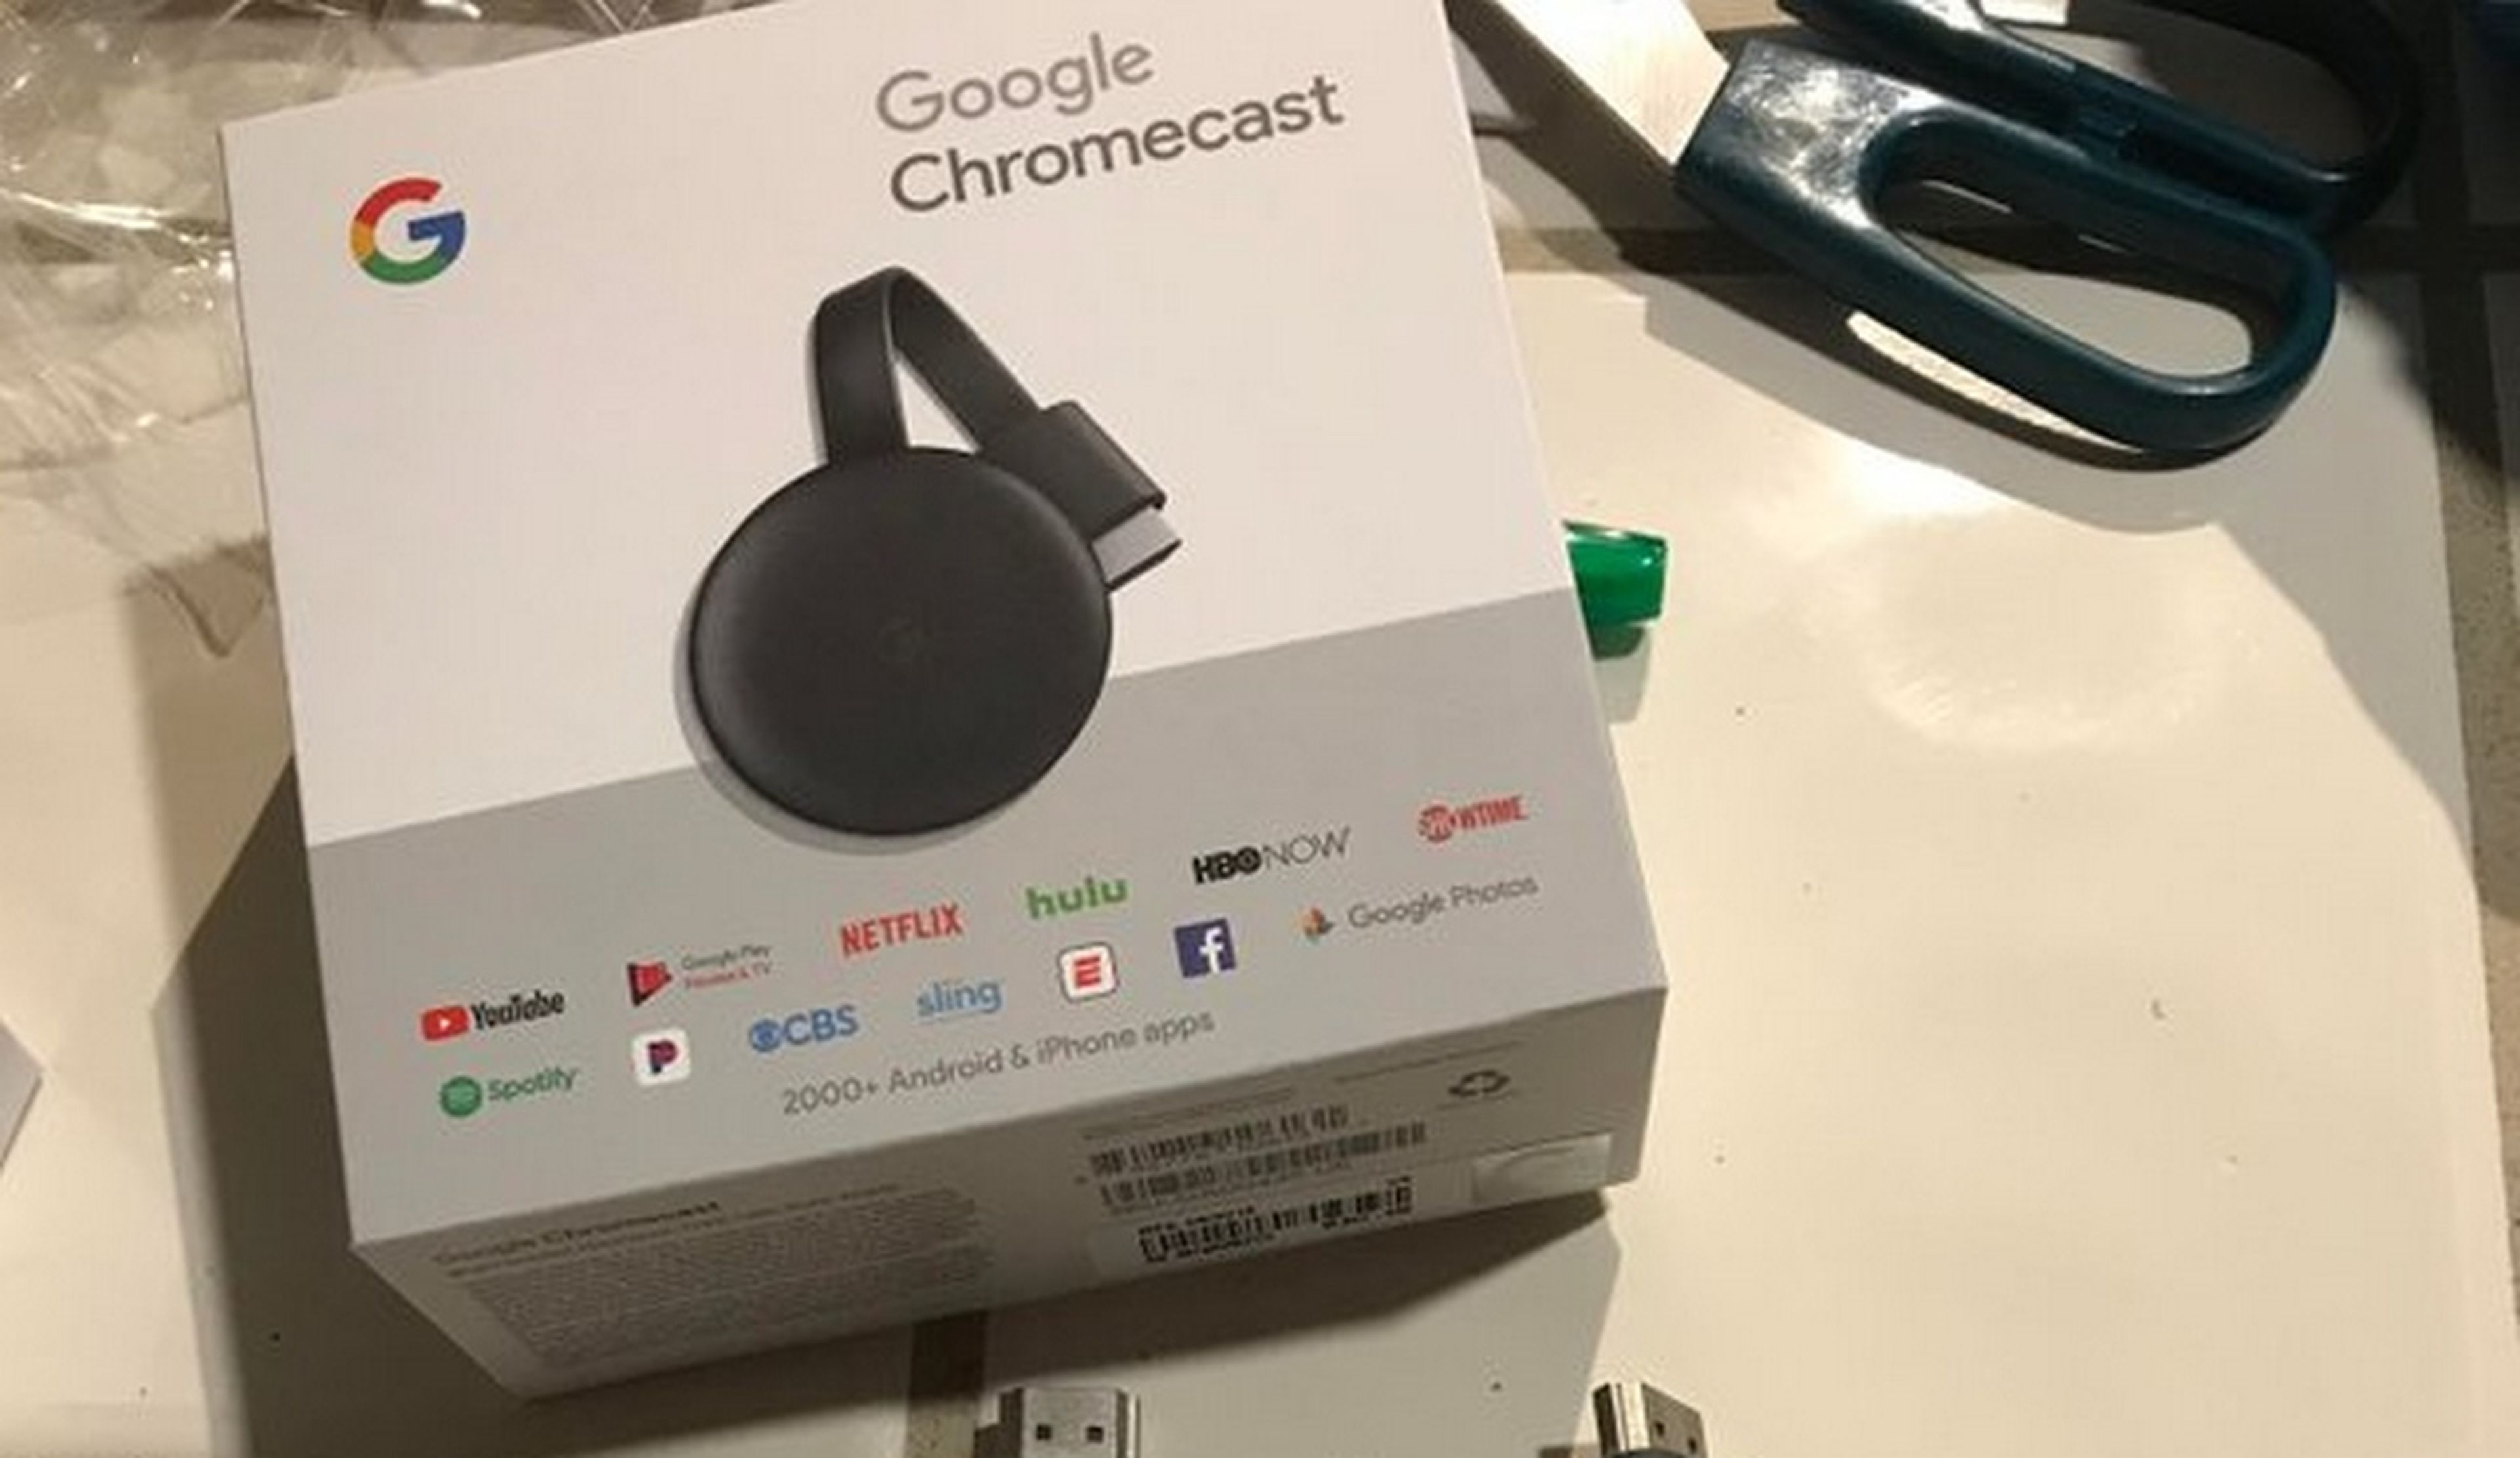 Un usuario compra un Chromecast 3 antes de que Google lo anuncie (fotos)